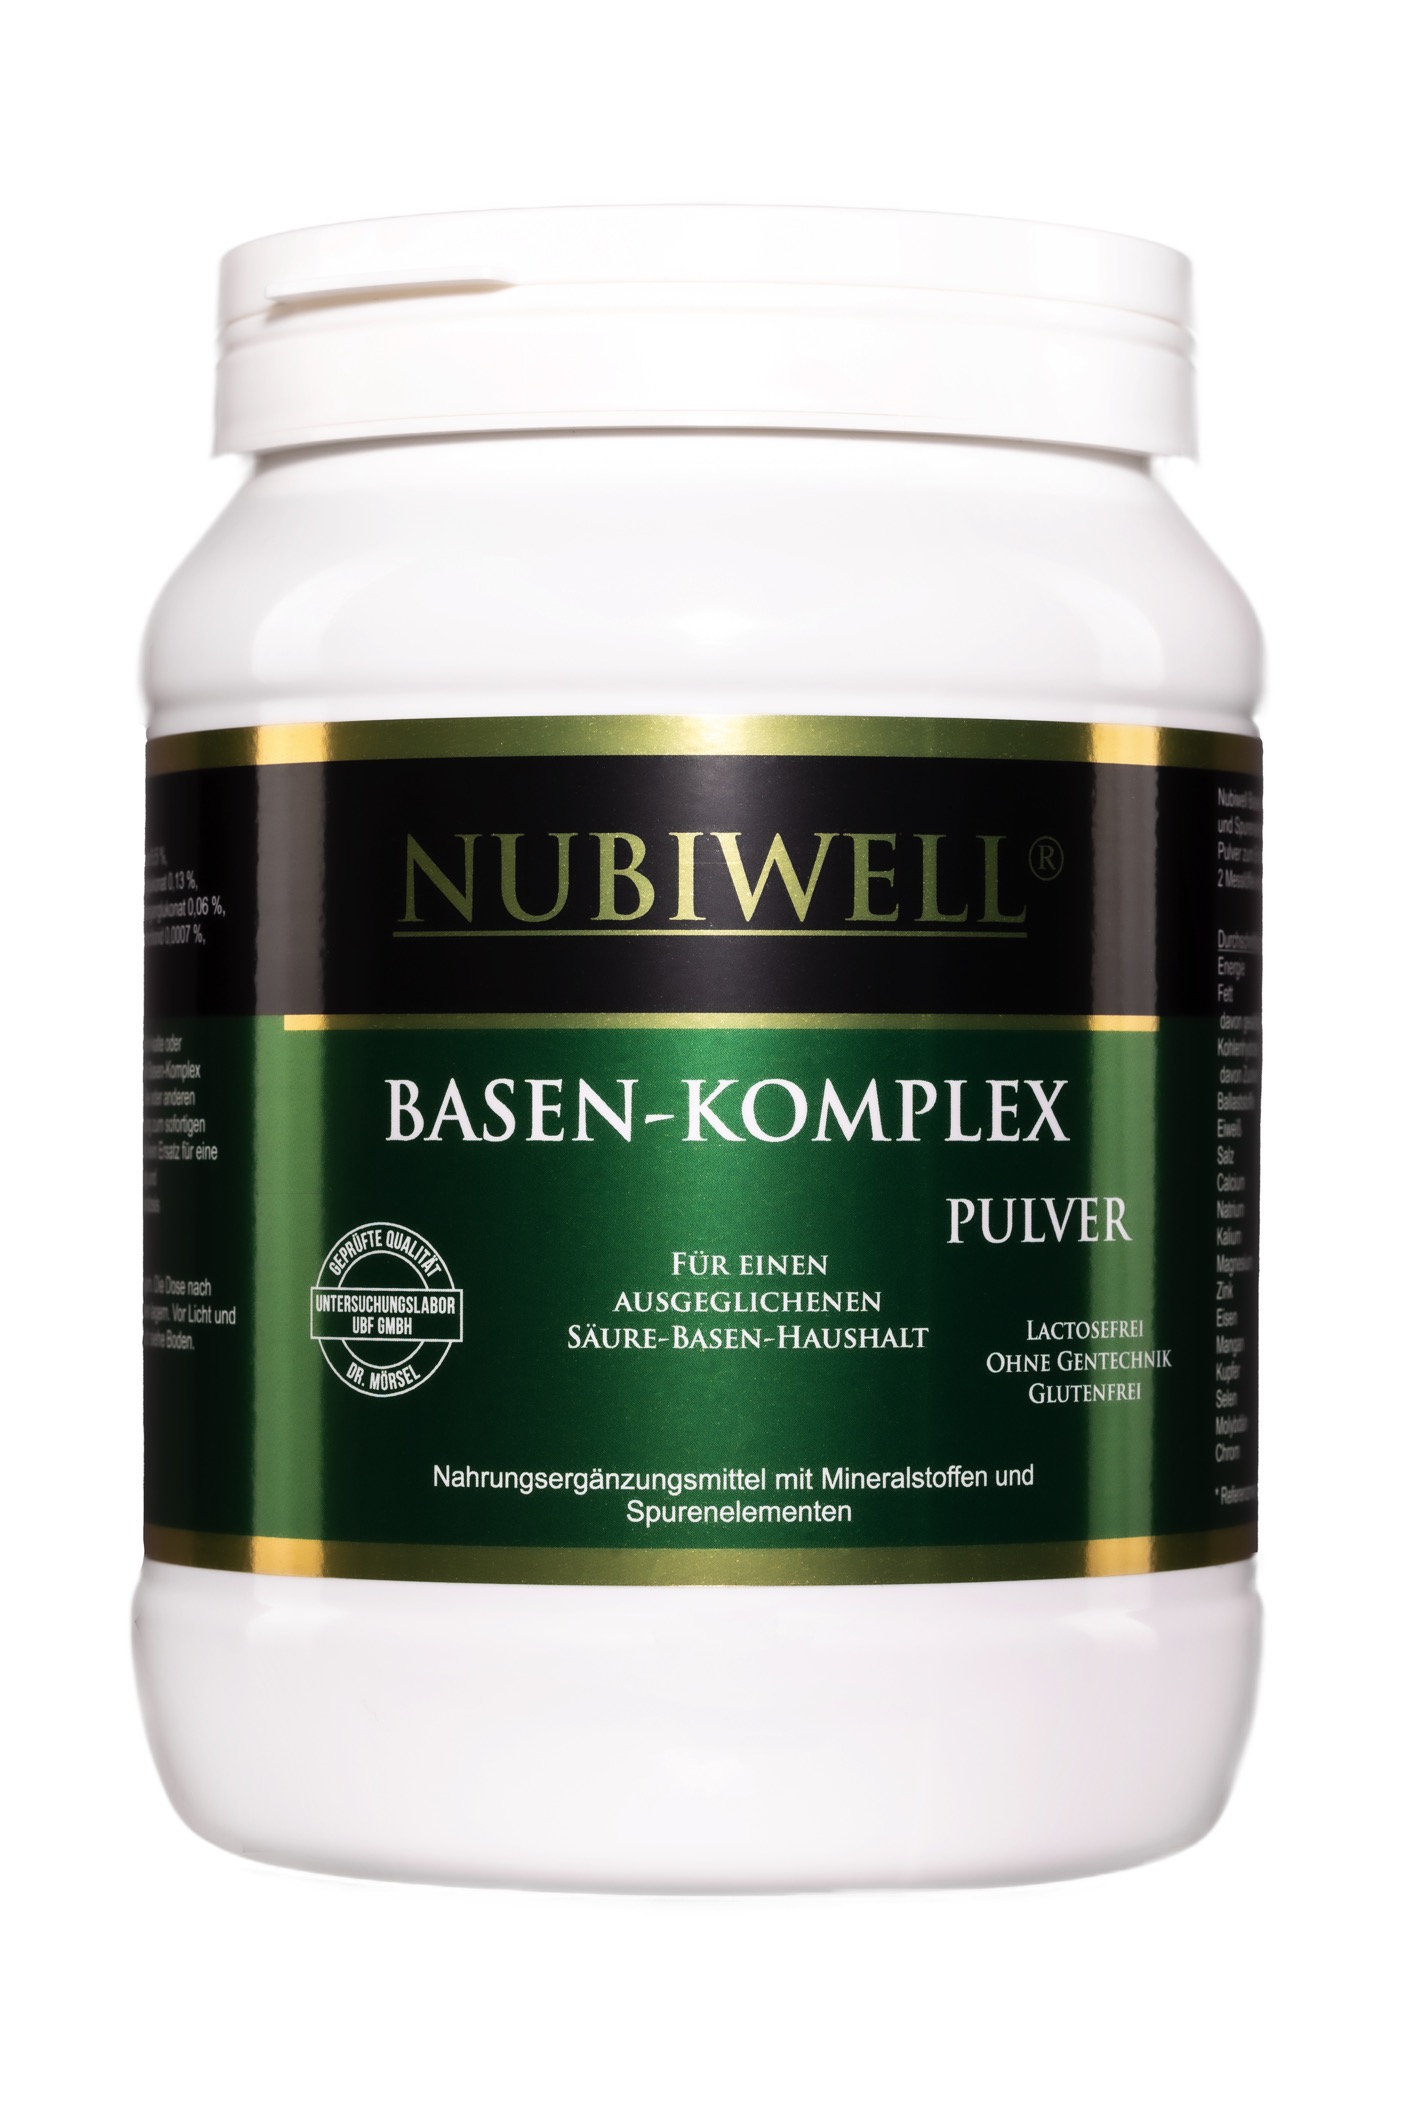 Nubiwell Basen-Komplex Pulver 750 g